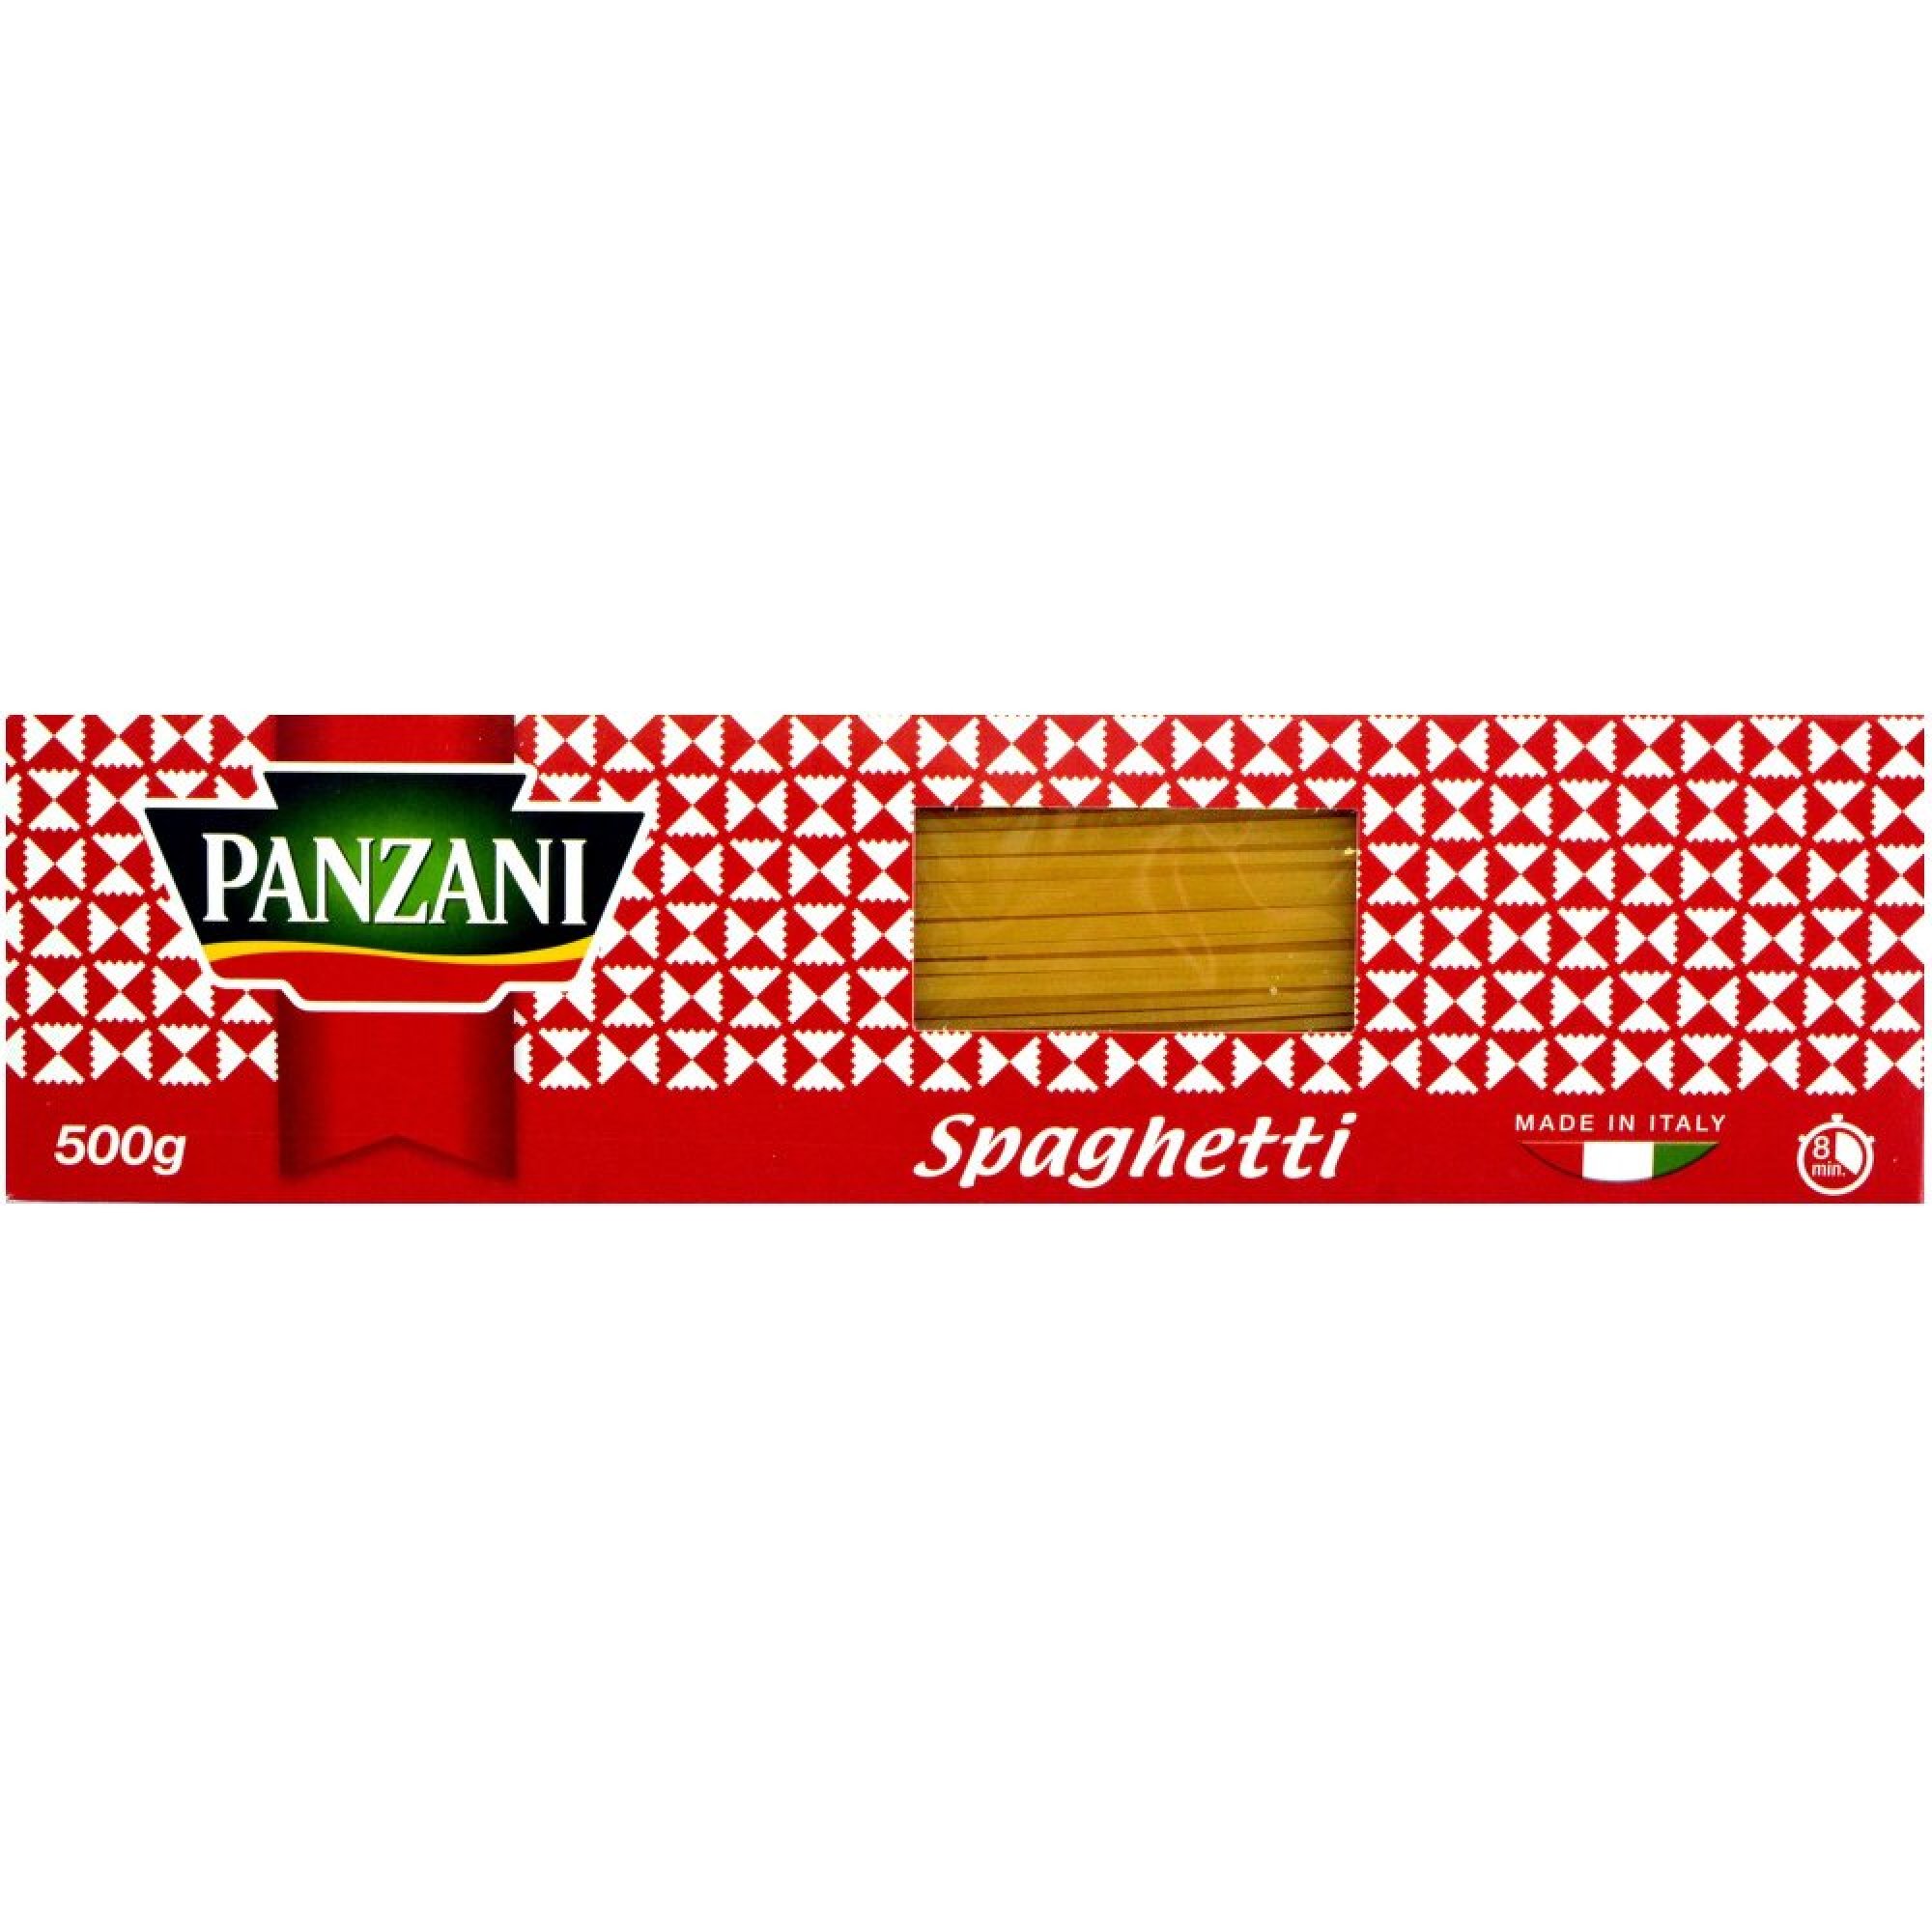 Panzani spaghetti 500g